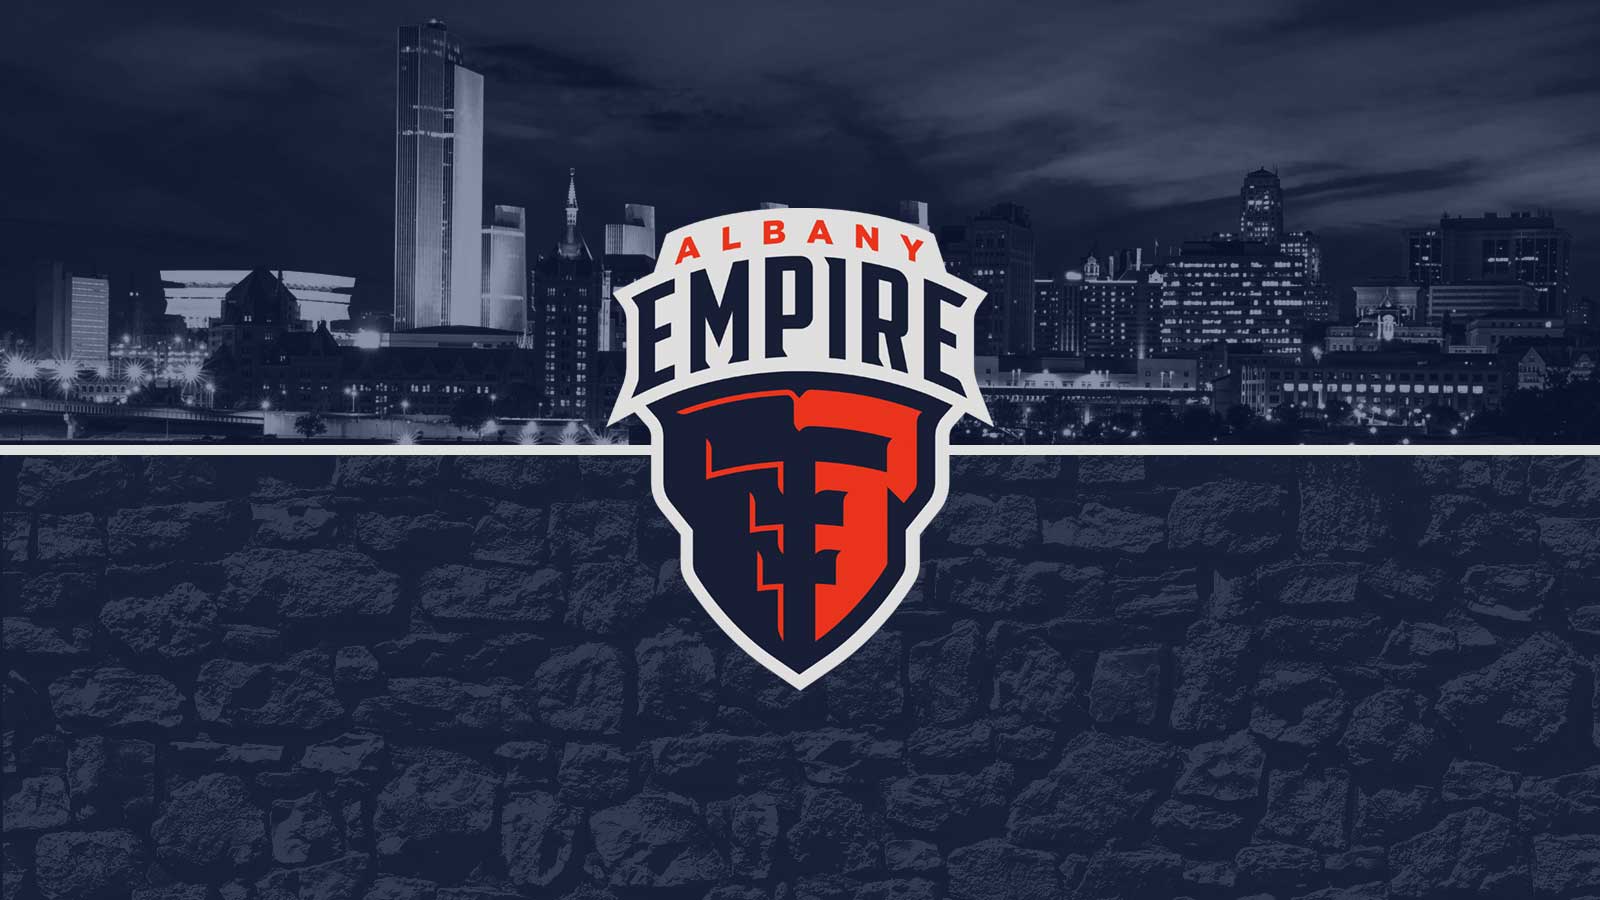 Empire Logo - TheAlbanyEmpire.com Empire Announced as AFL Team Name and Logo